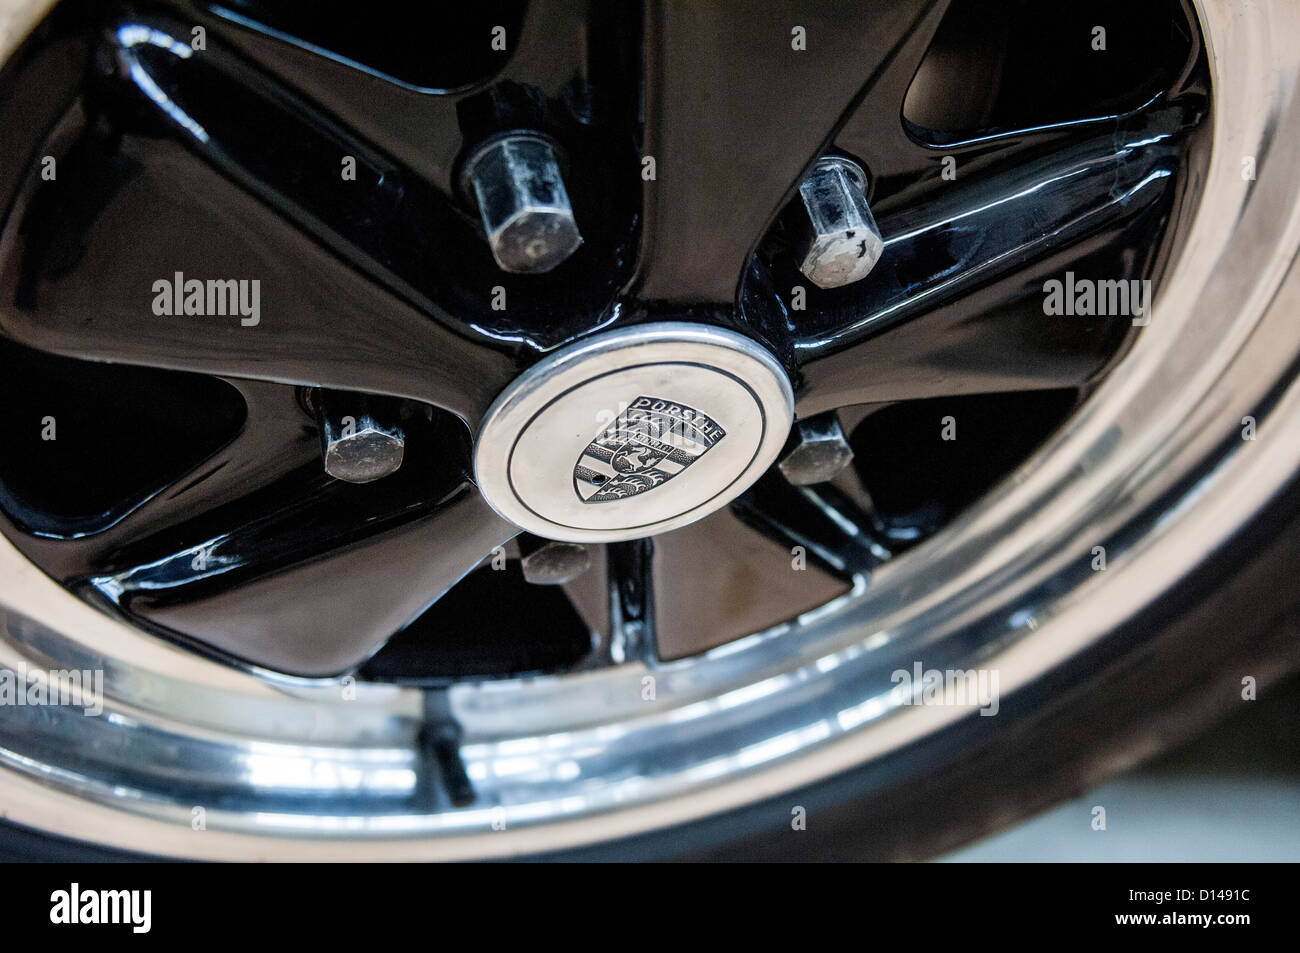 Oldtimer Porsche-Detail - Fuchs-Felge Stockfotografie - Alamy